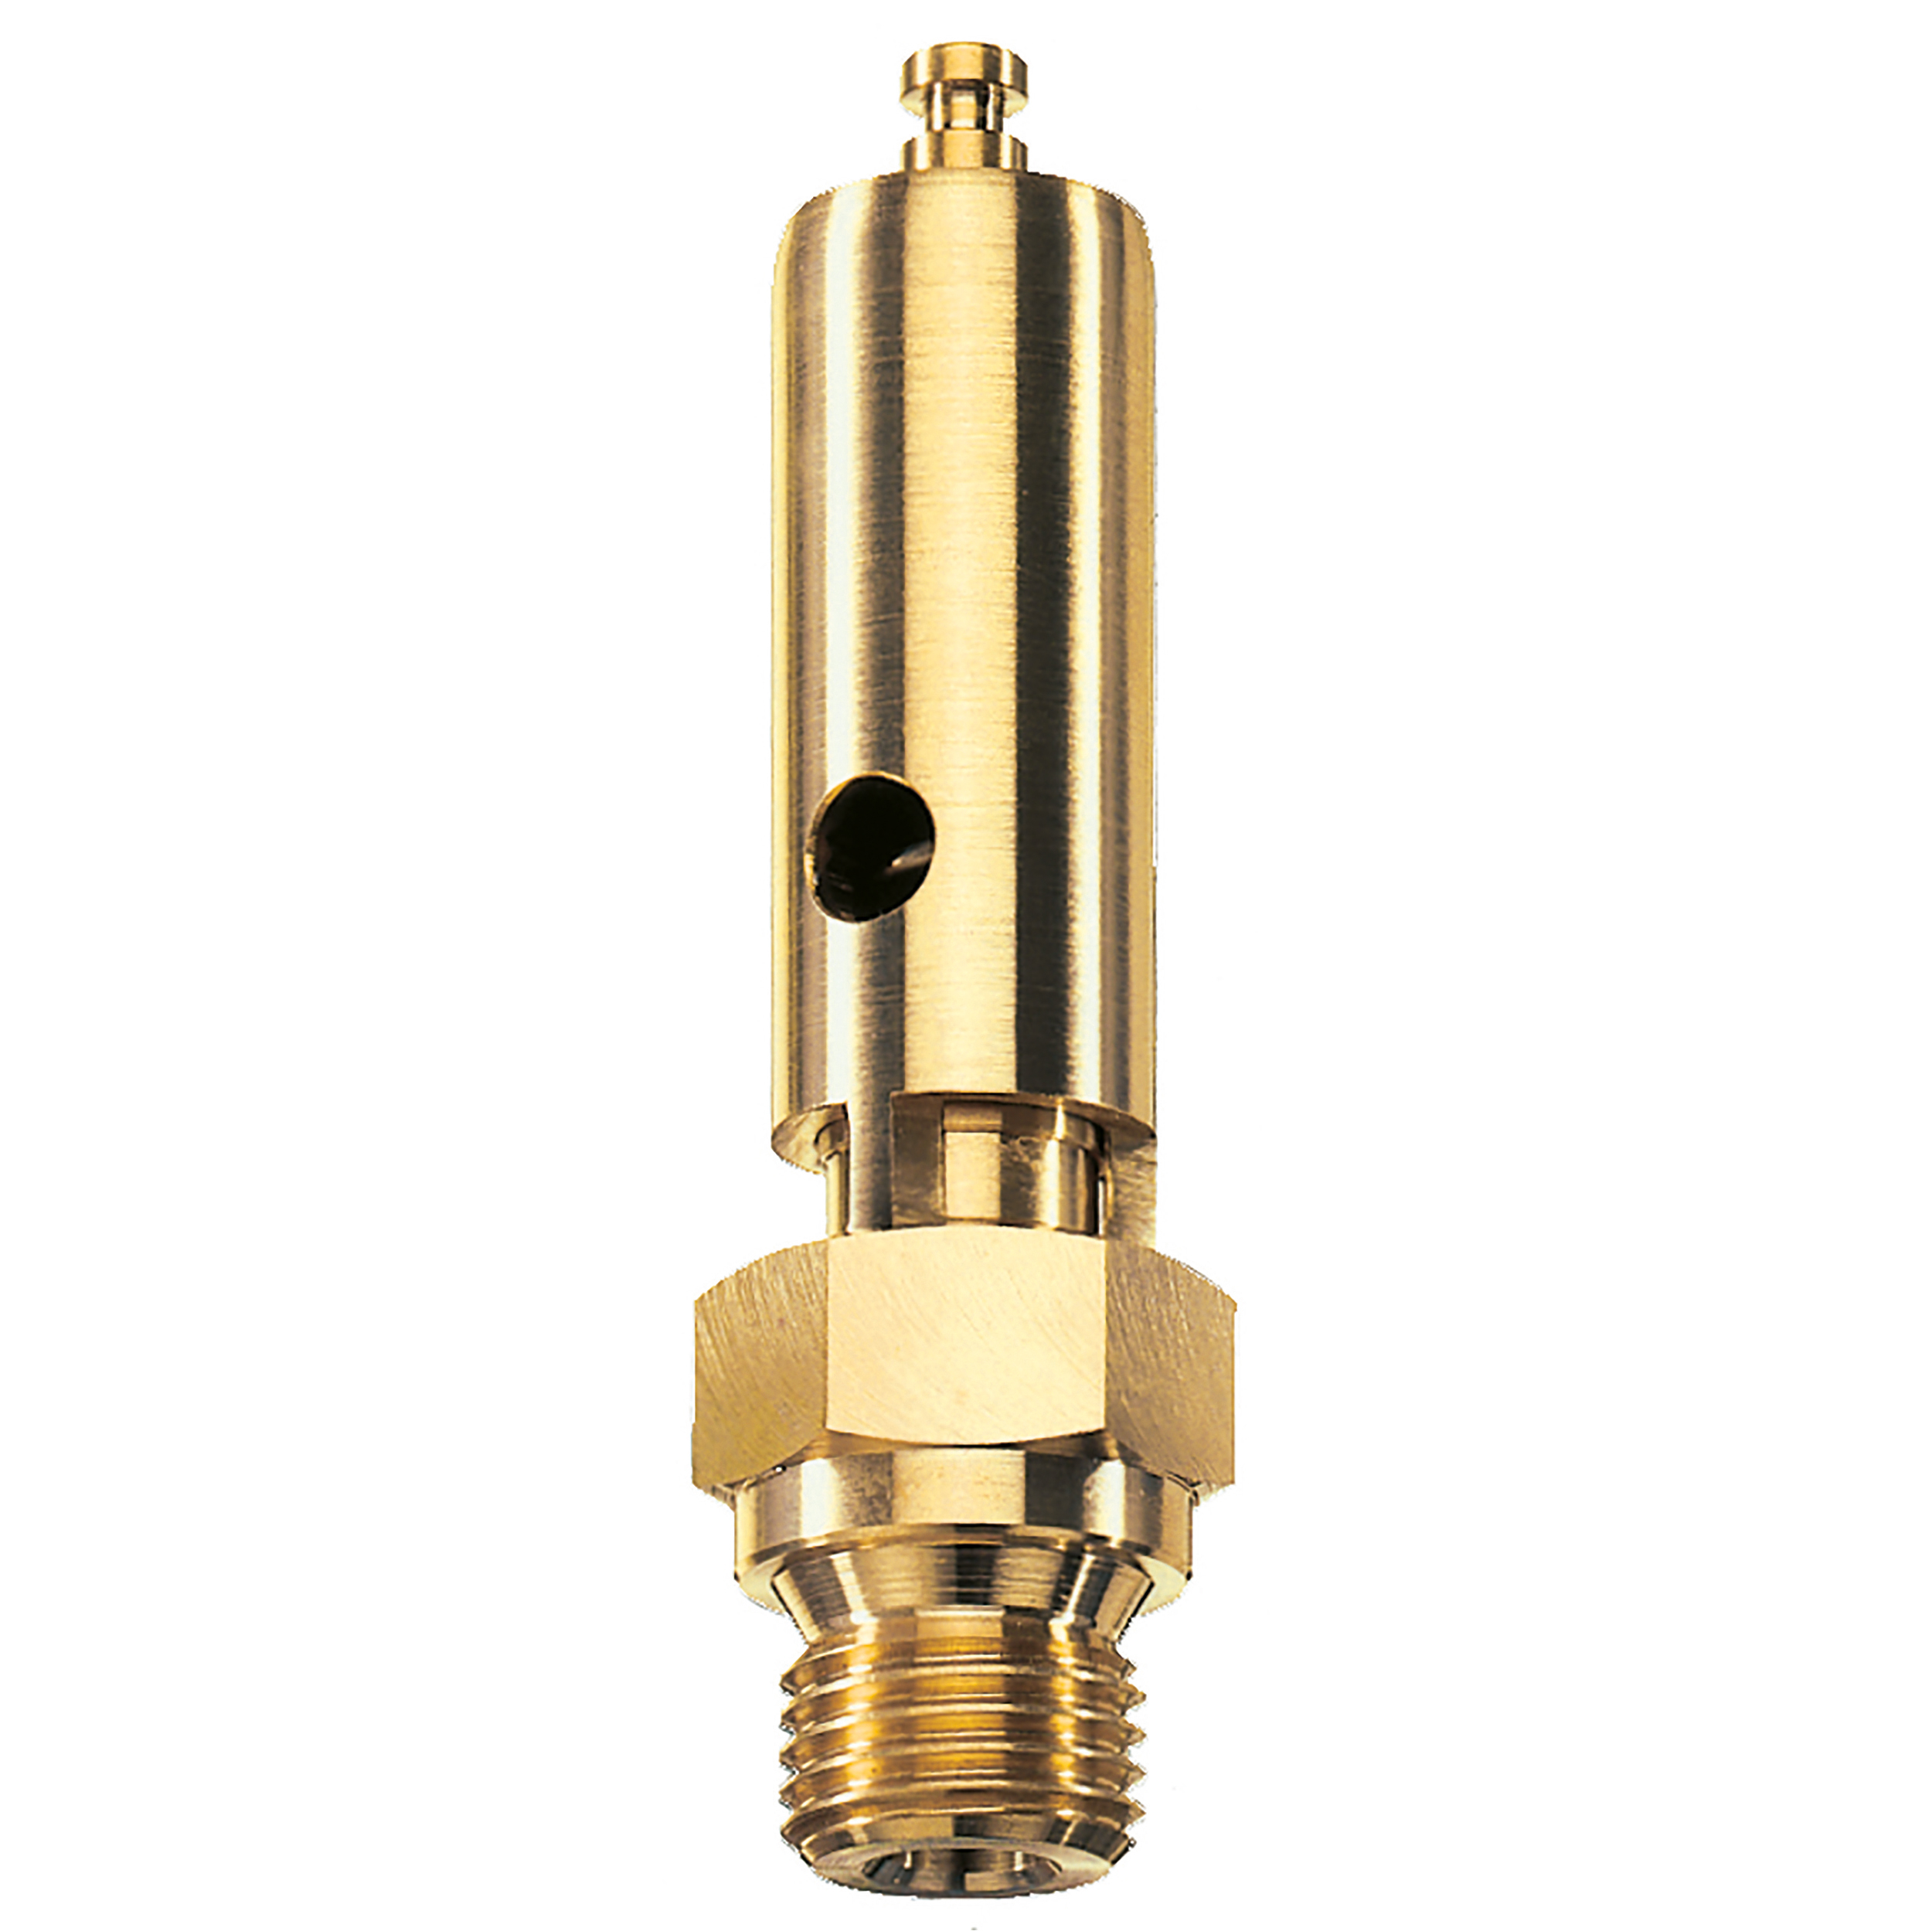 Savety valve component tested DN 6, G⅜, L: 60 mm, seal: FKM, set pressure: 9 bar (130,5 psi), TÜV approval